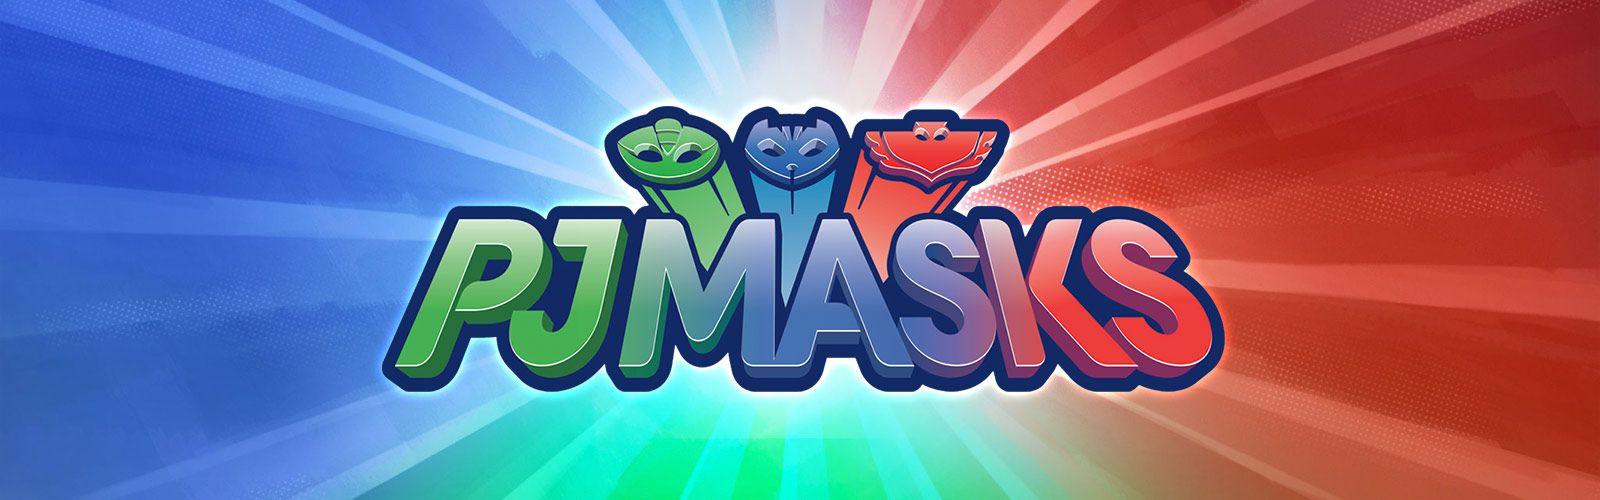 Pj Masks Logo Logodix | Images and Photos finder